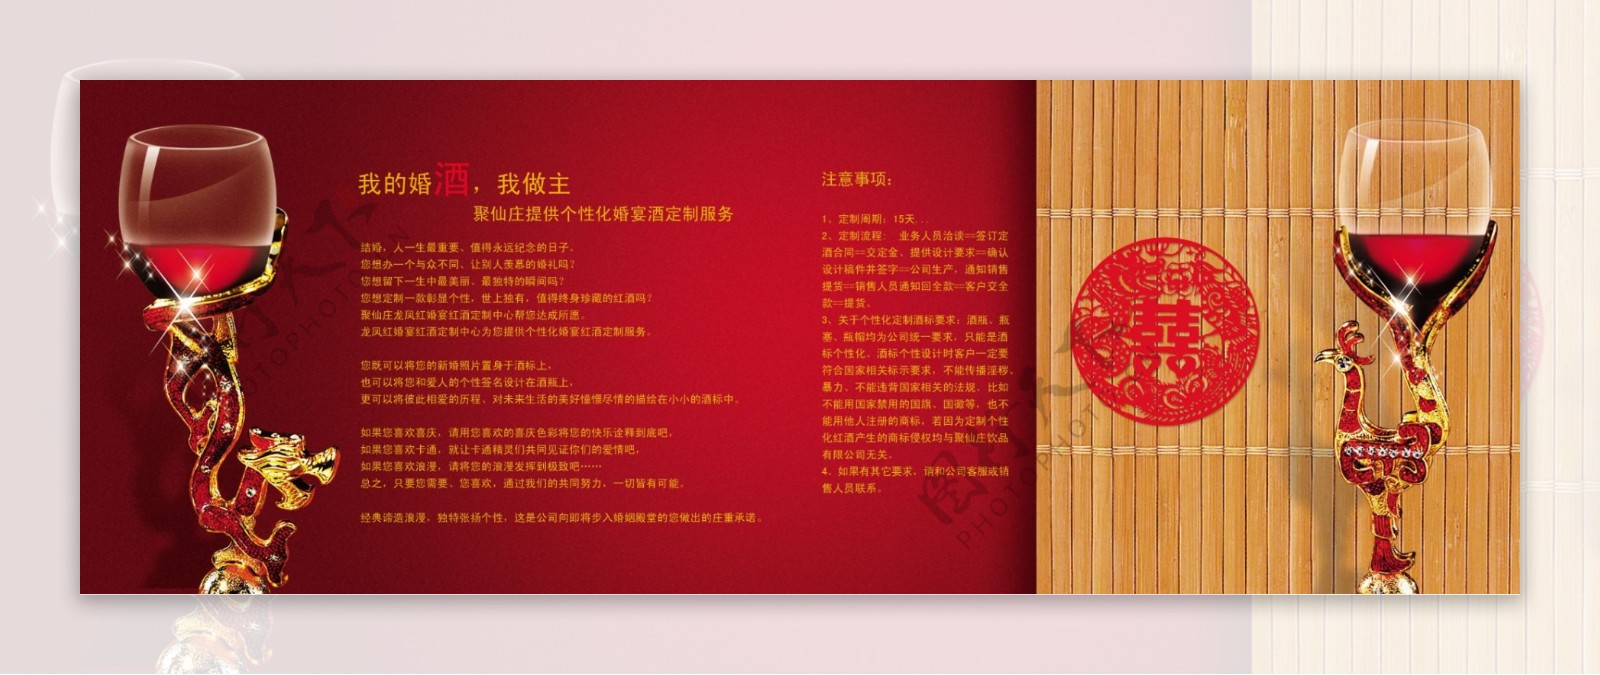 龙凤红婚宴酒画册图片